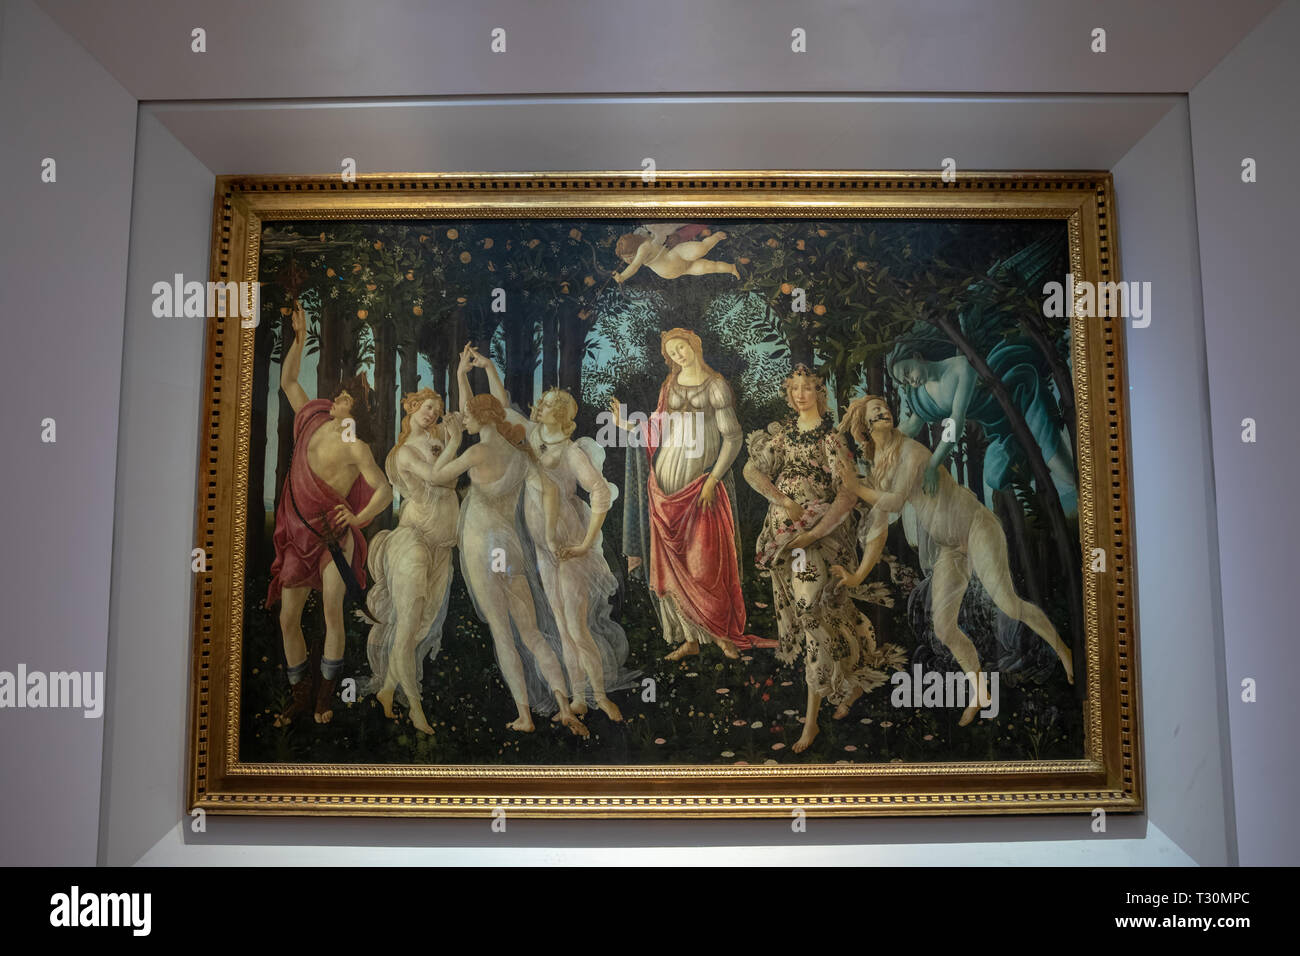 Florenz, Italien, 26. Juni 2018: Closeup Bild von Primavera (Frühling) ist Malen in tempera Farbe von dem italienischen Maler Sandro Botticelli in Halle o Stockfoto